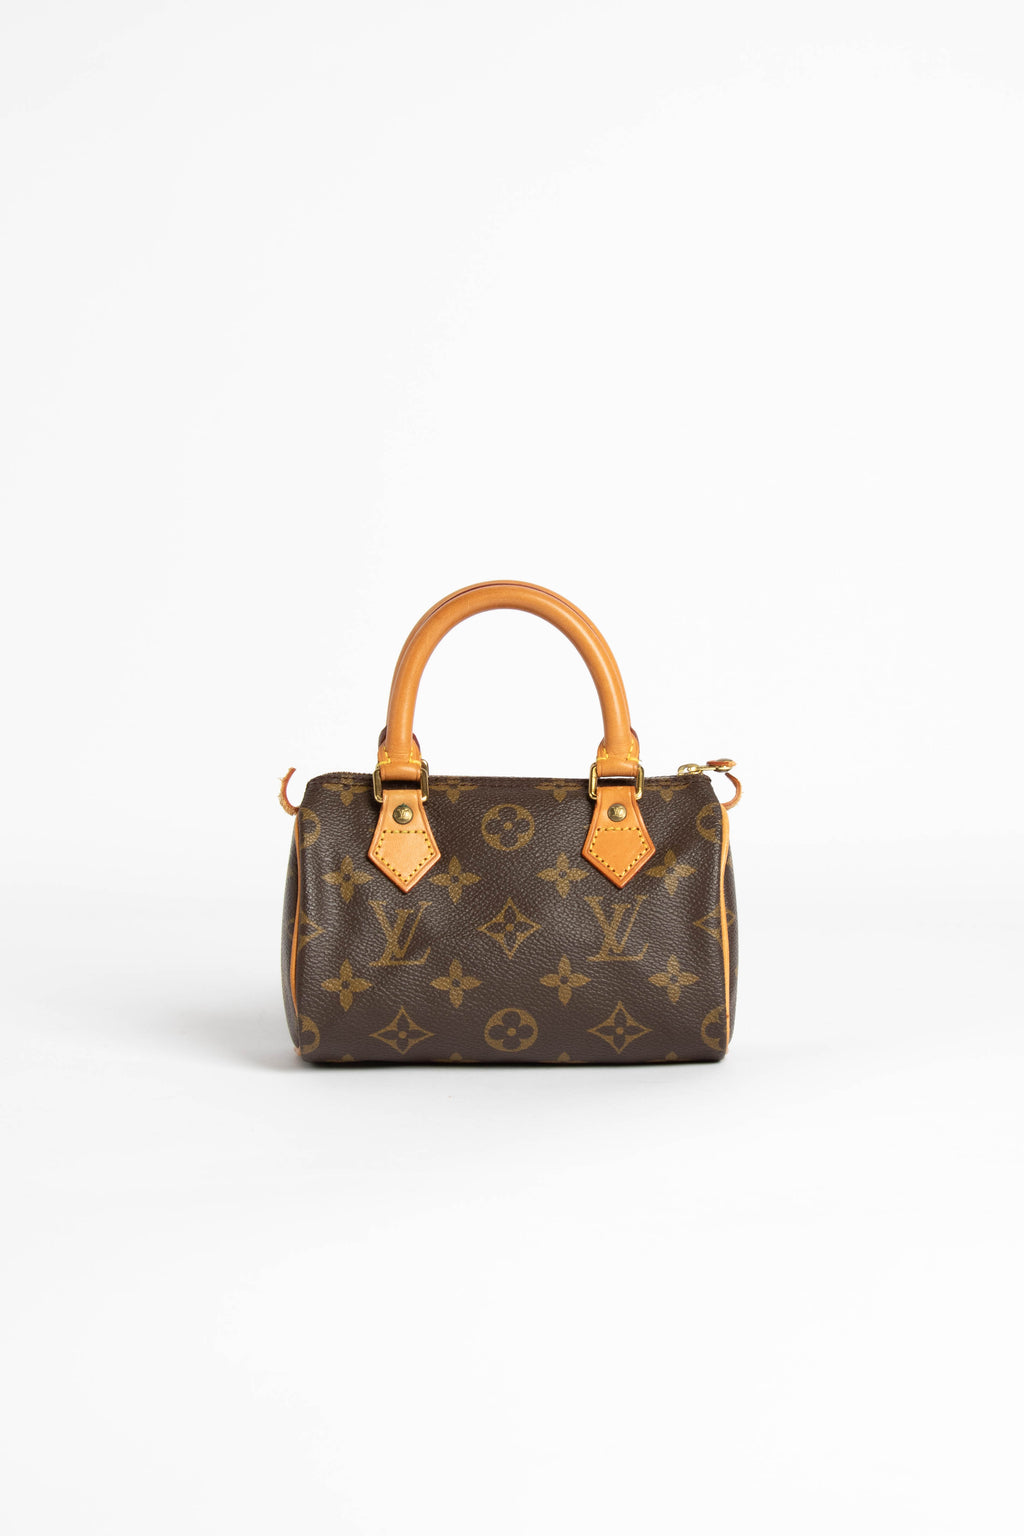 Louis Vuitton Monogram Croissant PM Baguette Bag – I MISS YOU VINTAGE